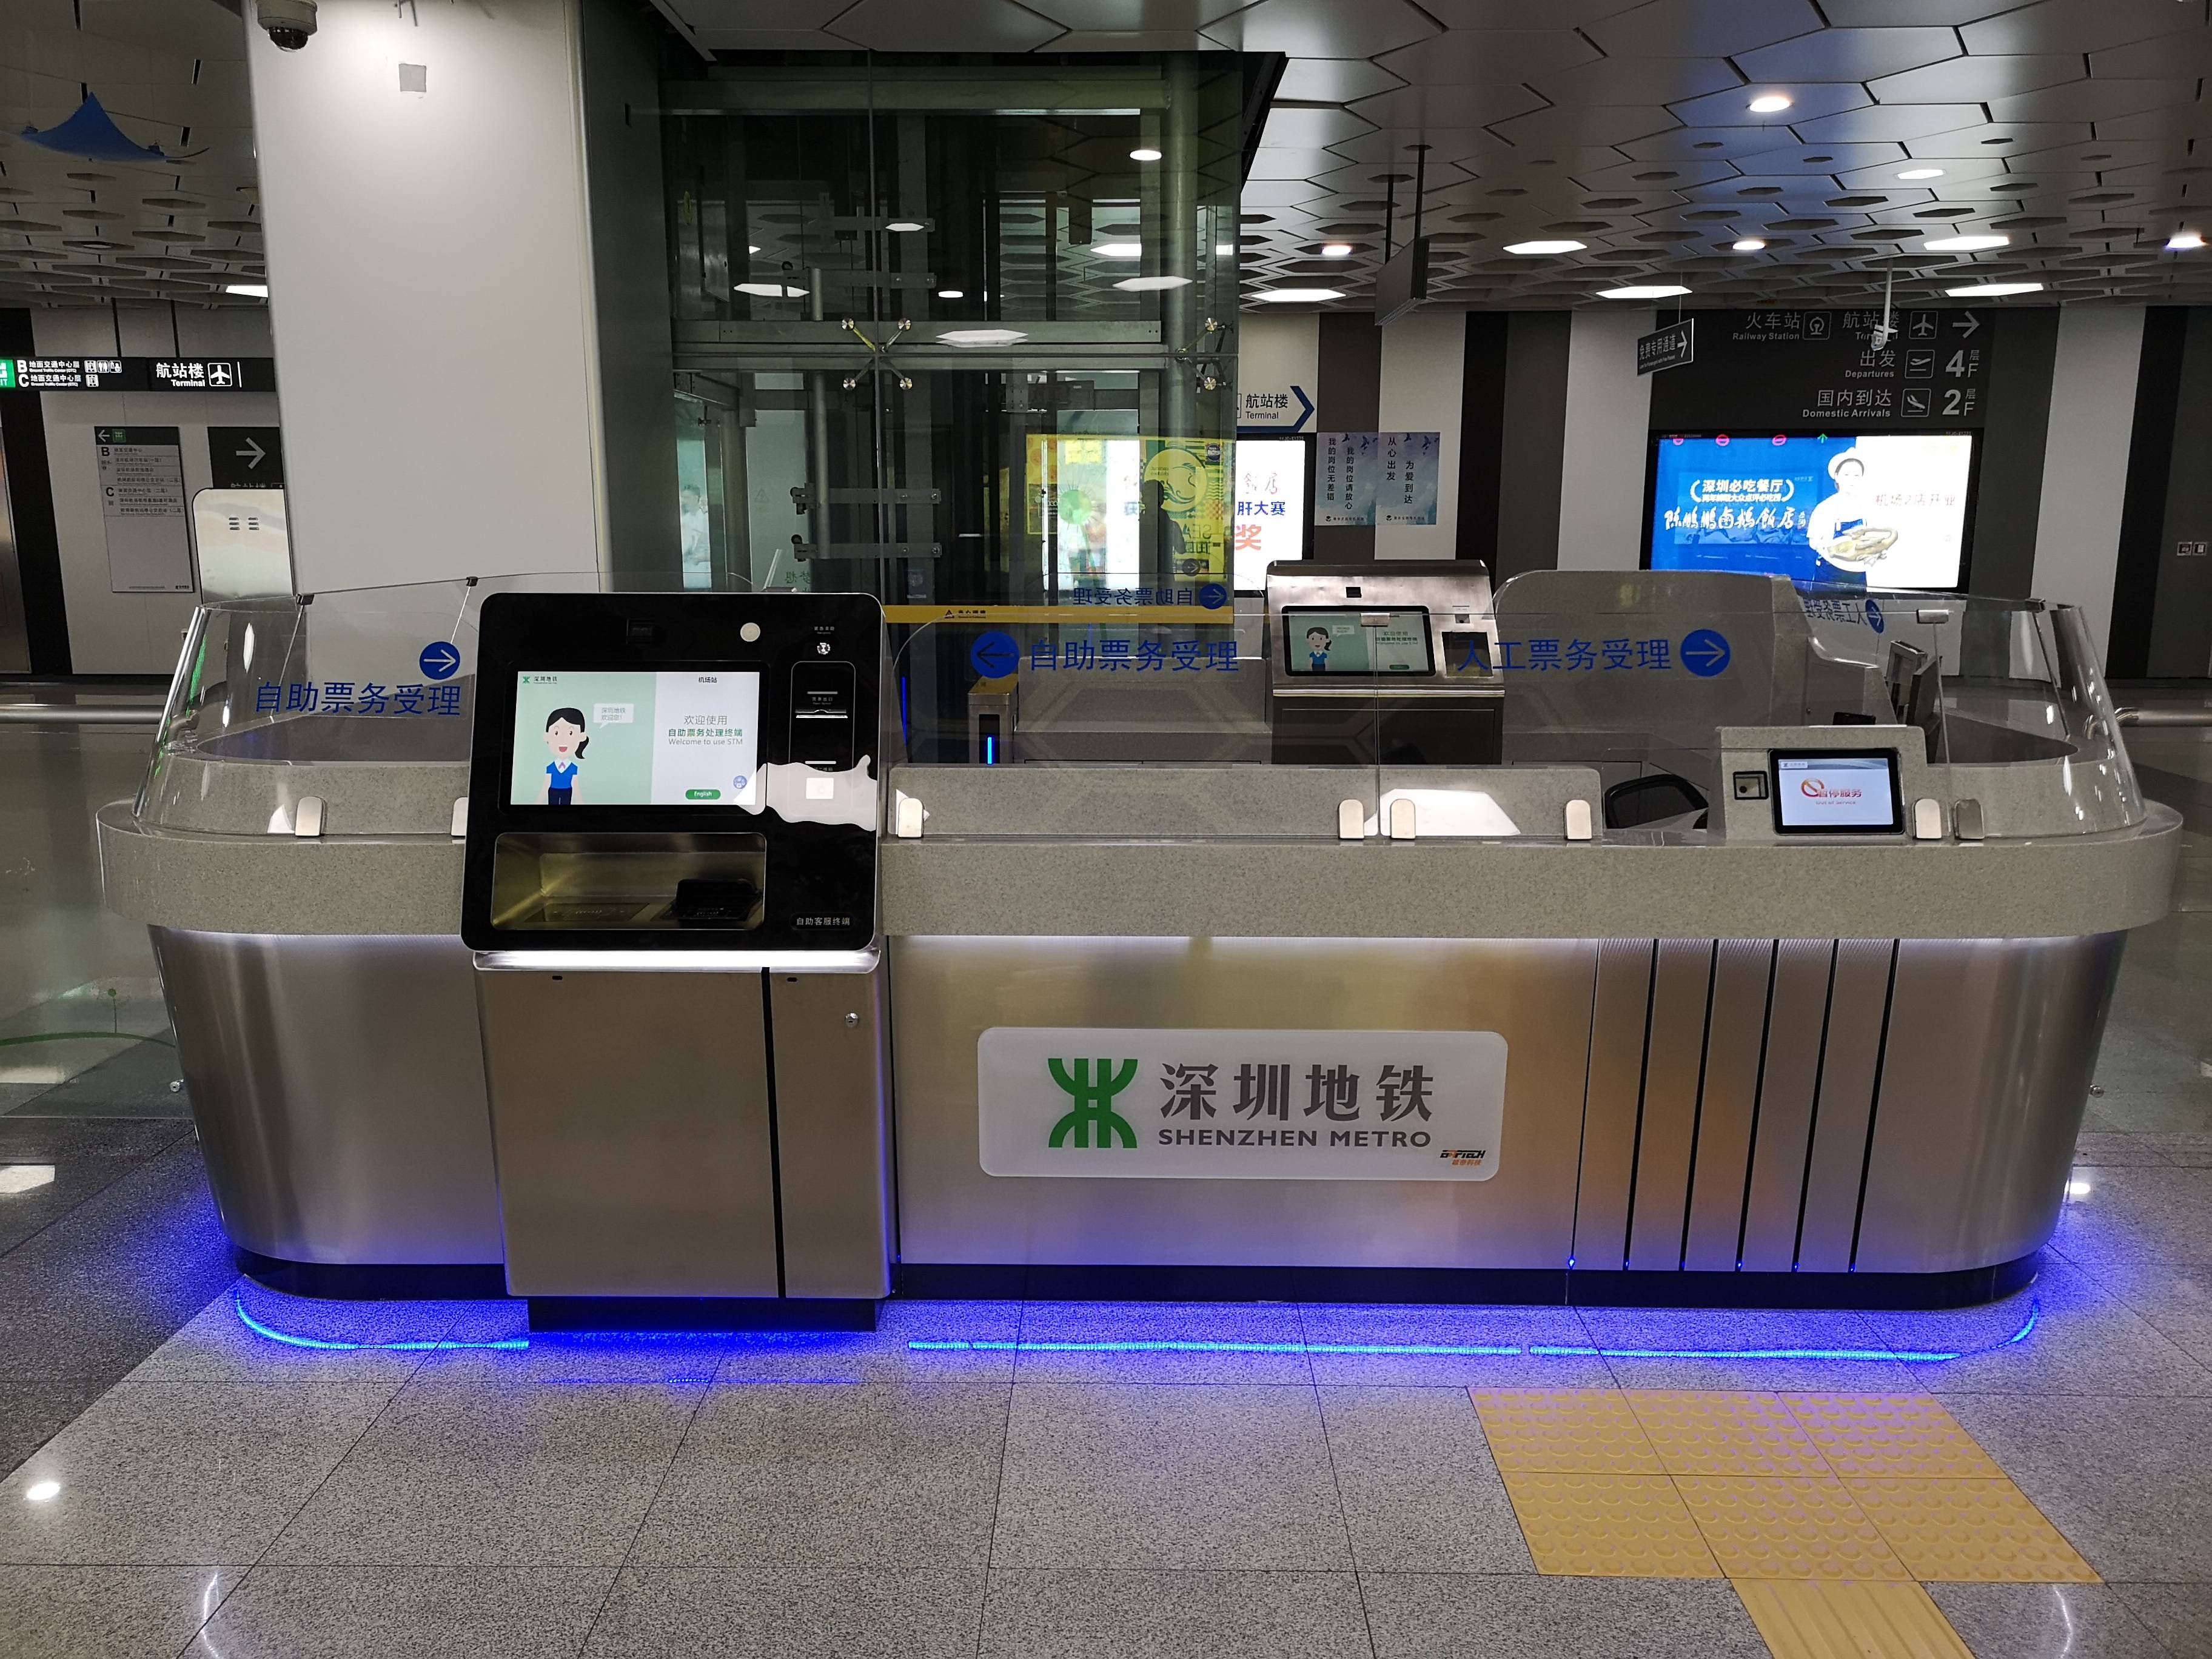 语音自助购票深圳地铁深云站和机场站试点智慧车站